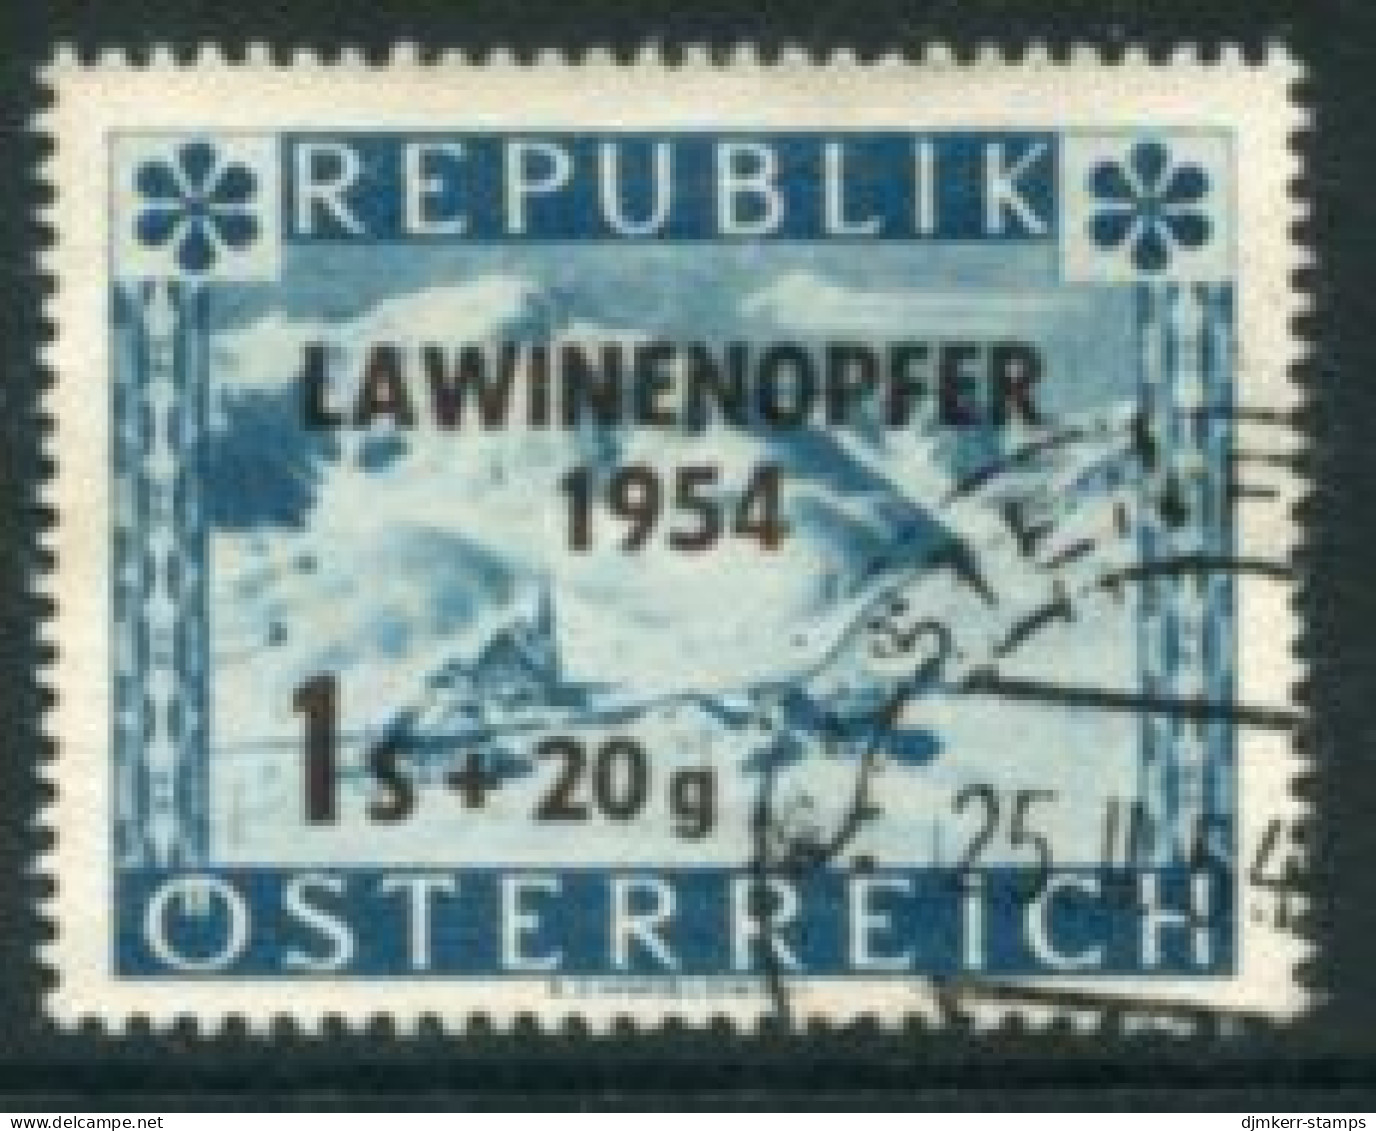 AUSTRIA 1954 Avalanche Relief Fund Used.  Michel 998 - Gebraucht